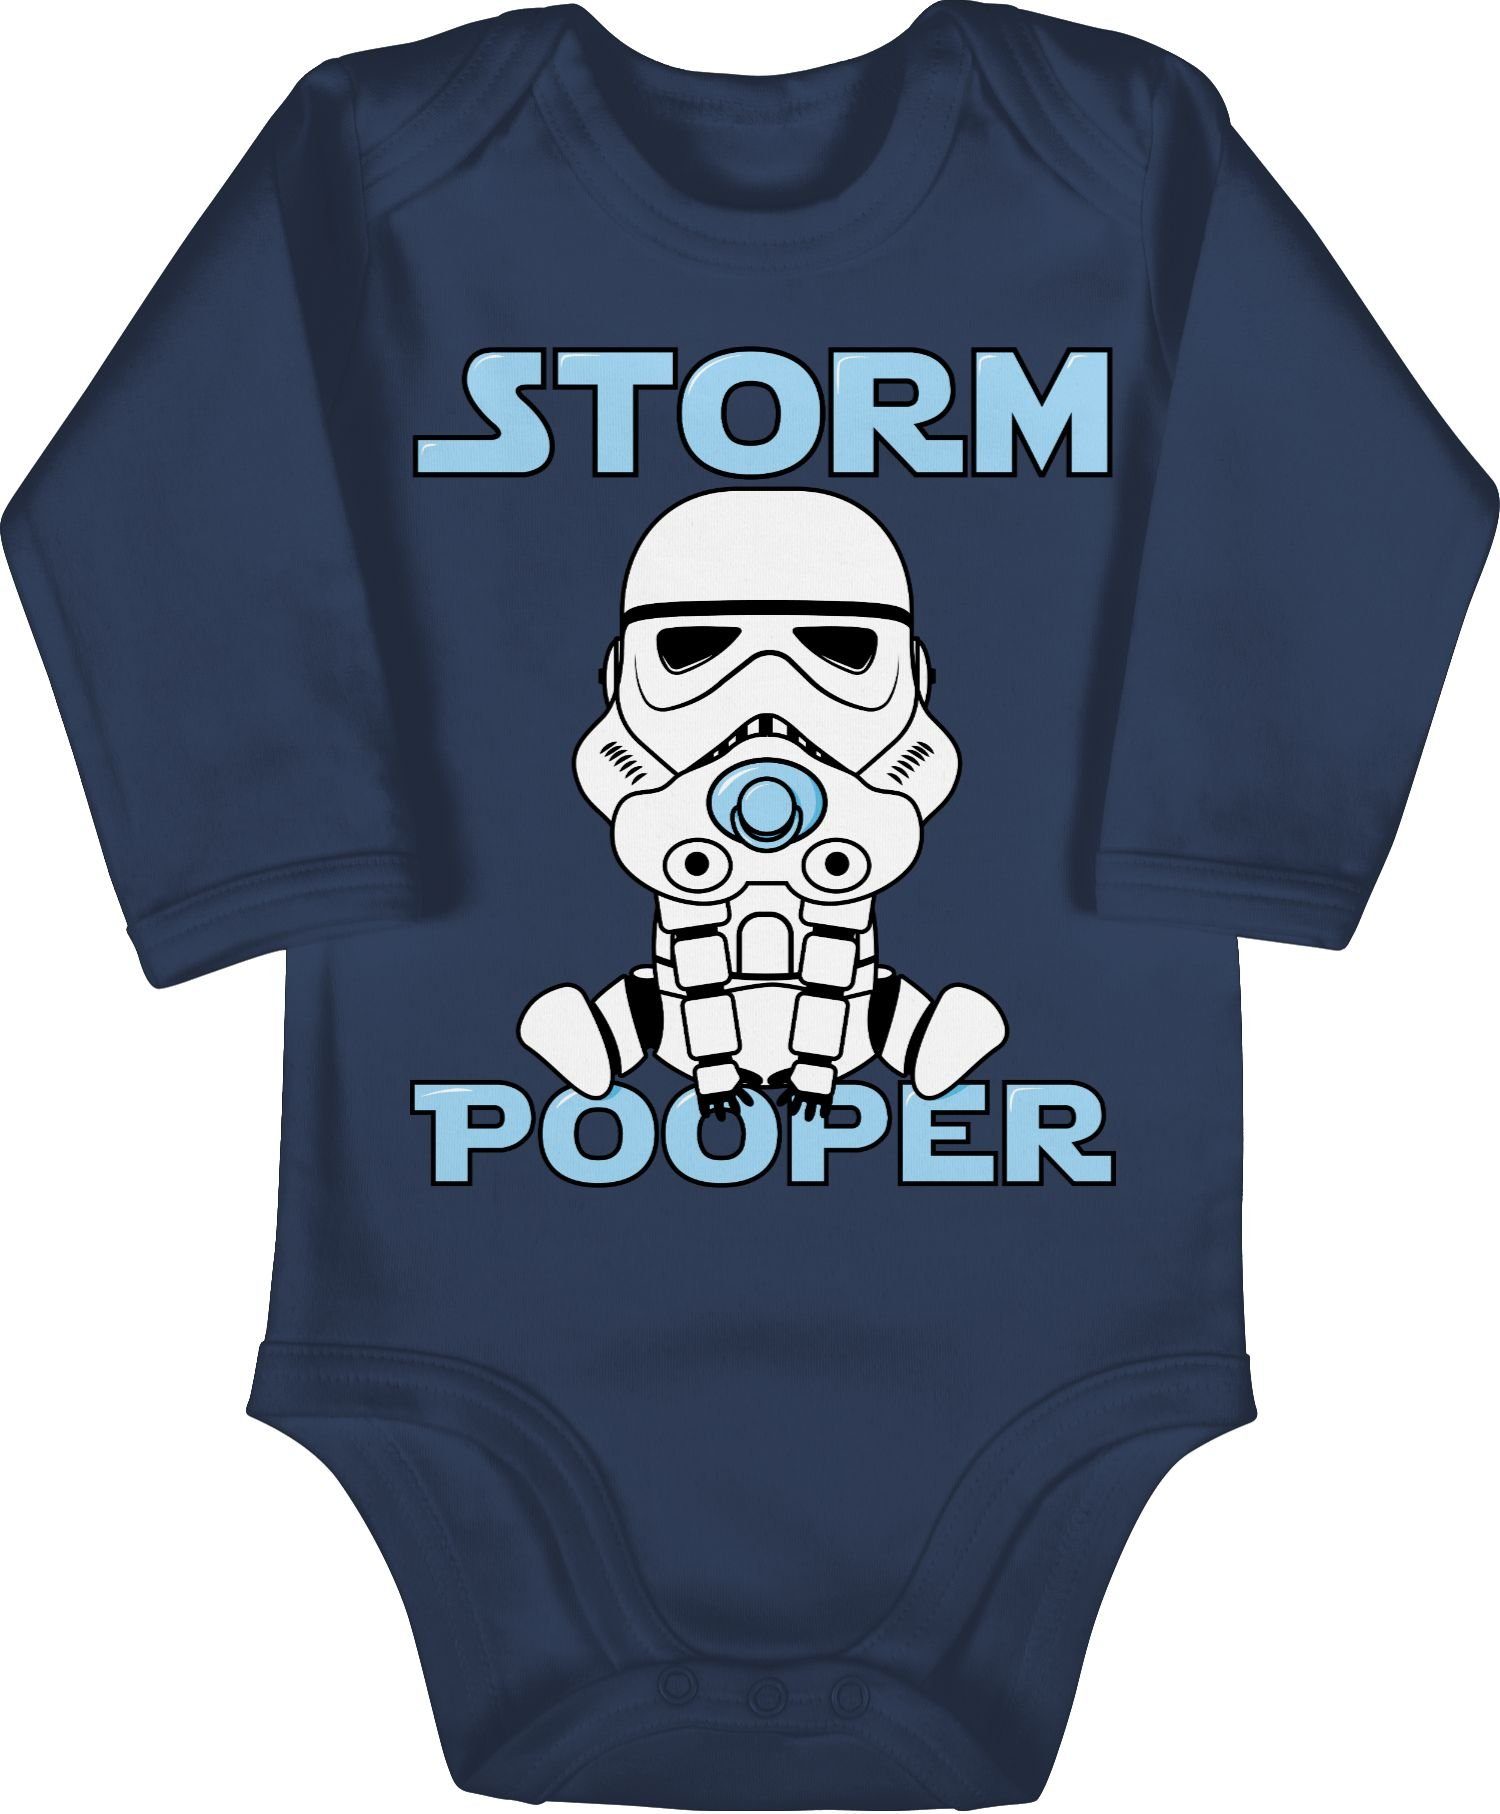 Shirtracer Shirtbody Storm Pooper Stormpooper Sprüche Baby 1 Navy Blau